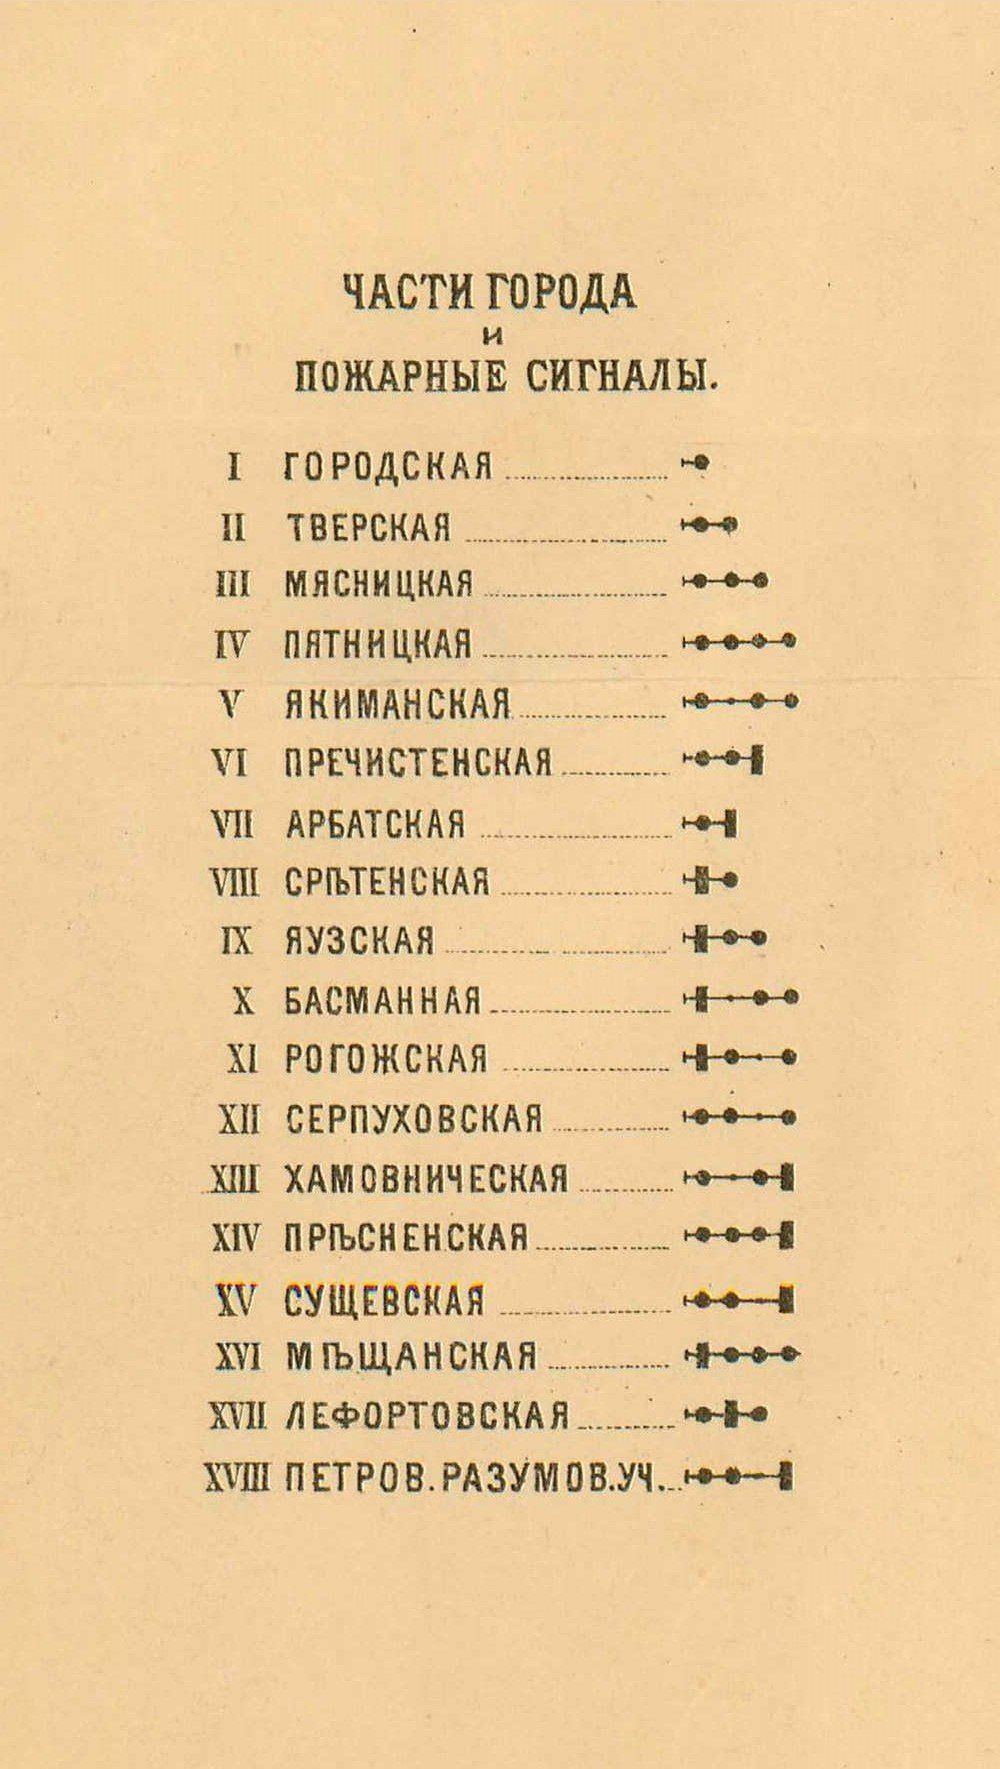 Список частей города Москвы с указанием соответствующих пожарных сигналов для оповещения. Вторая половина XIX века. Главархив Москвы